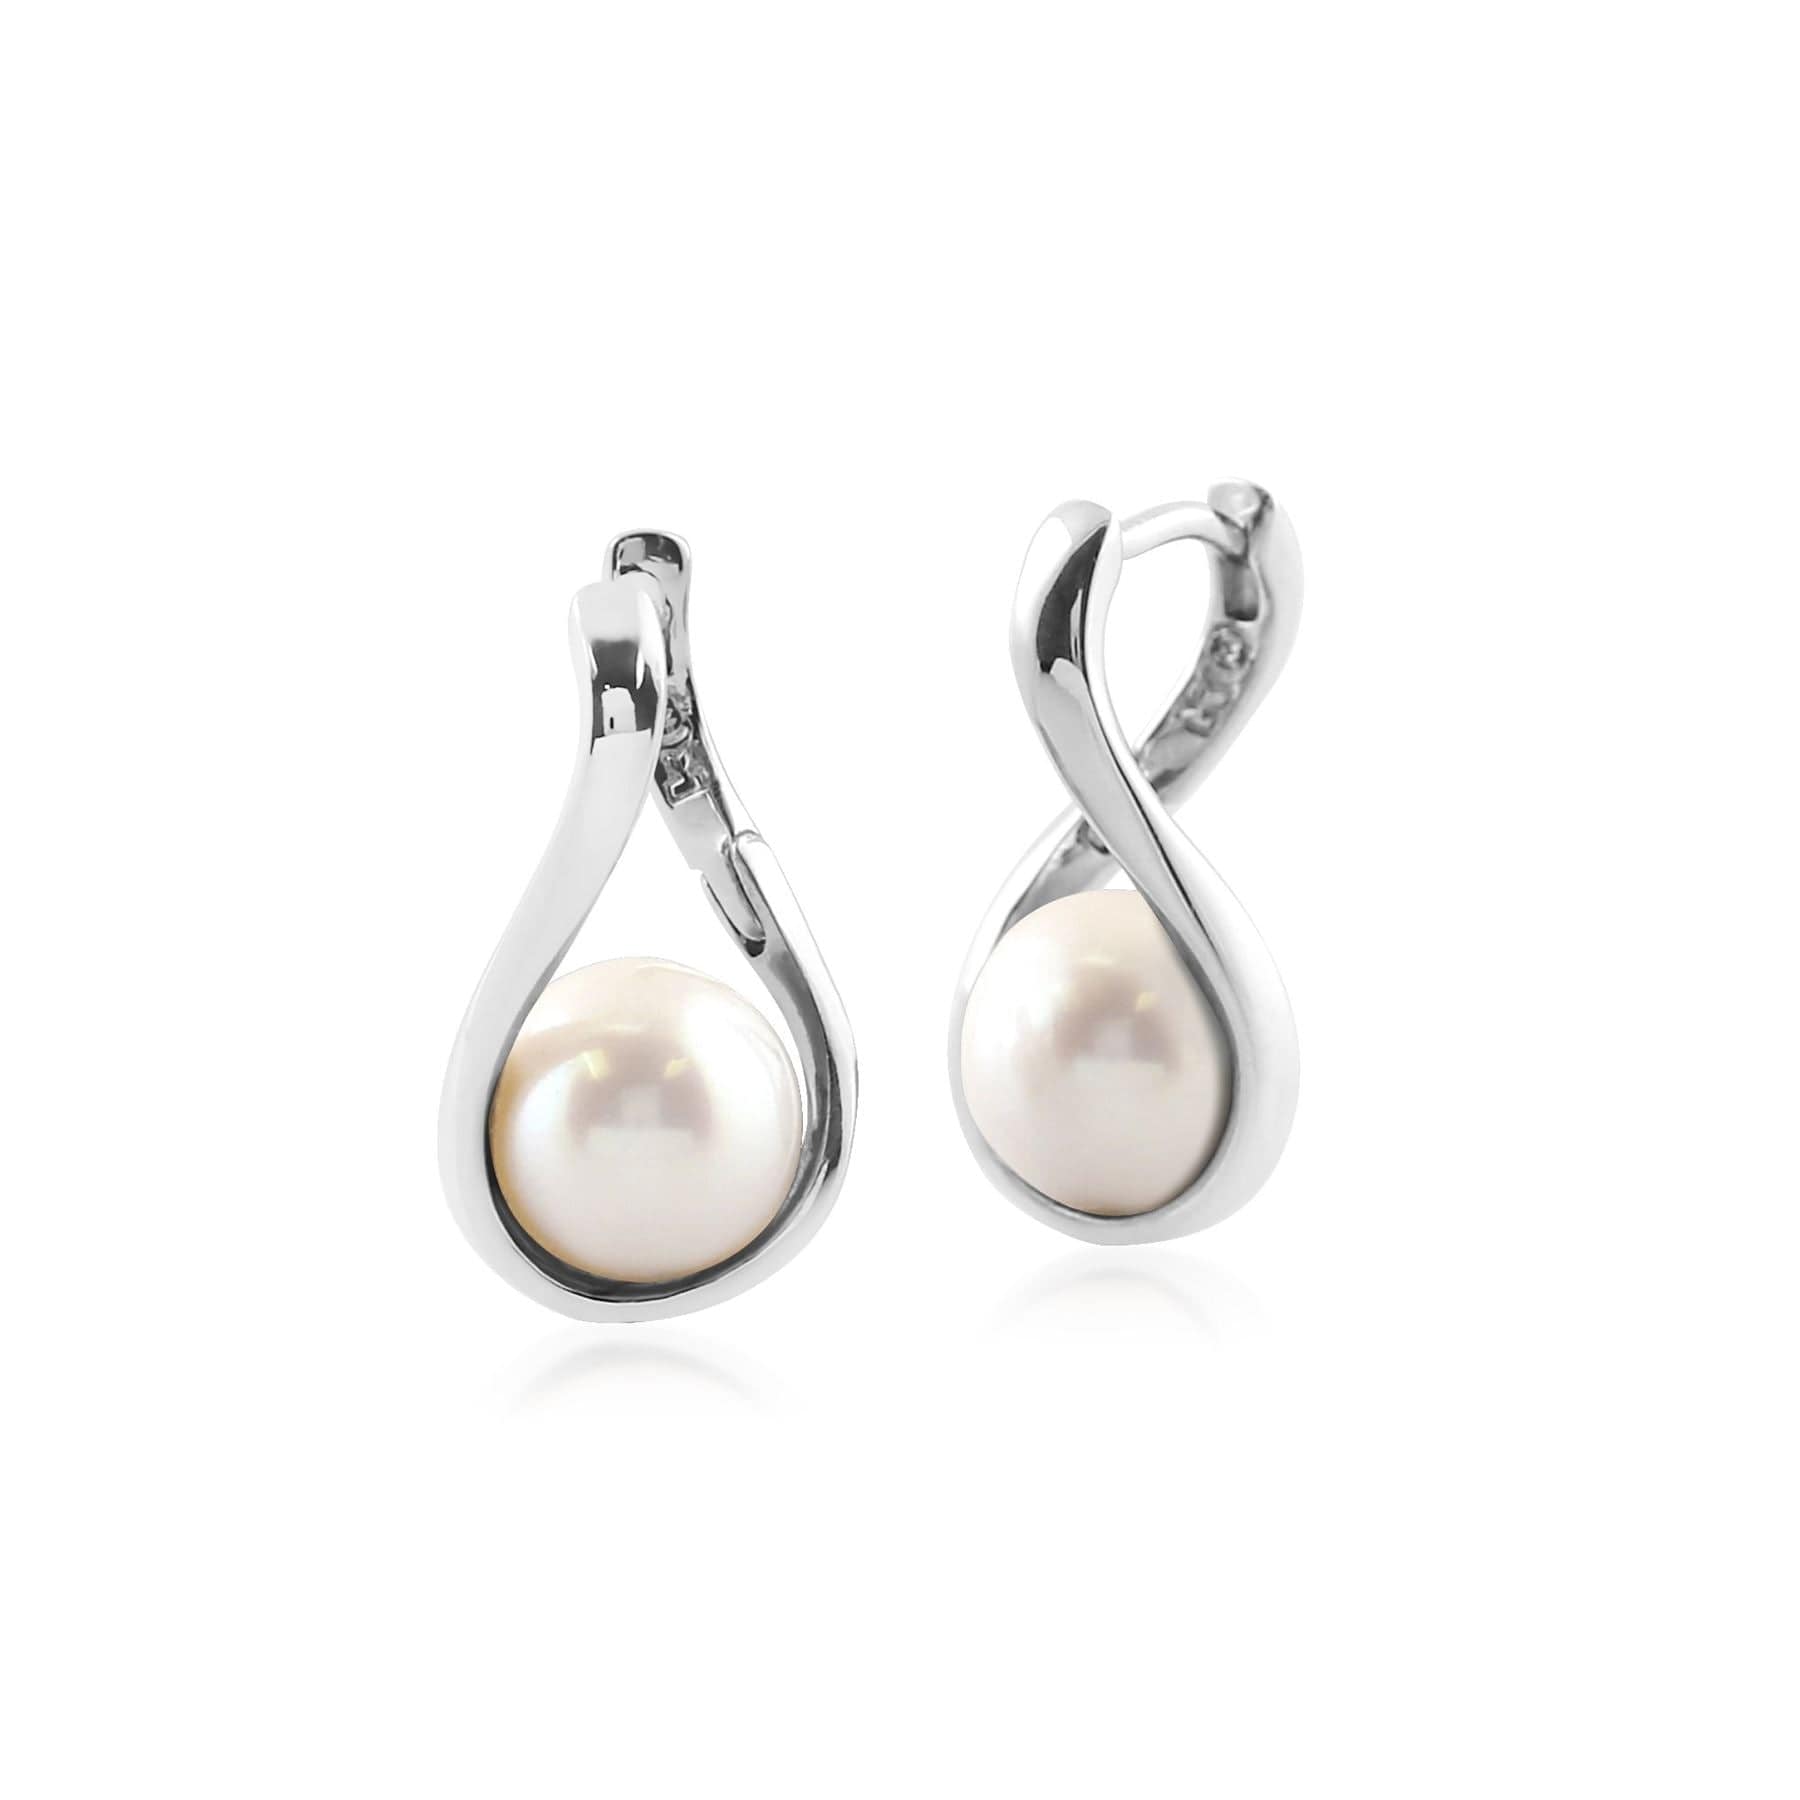 Kosmos Pearl Orb Earrings in Rhodium Plated Sterling Silver - Gemondo